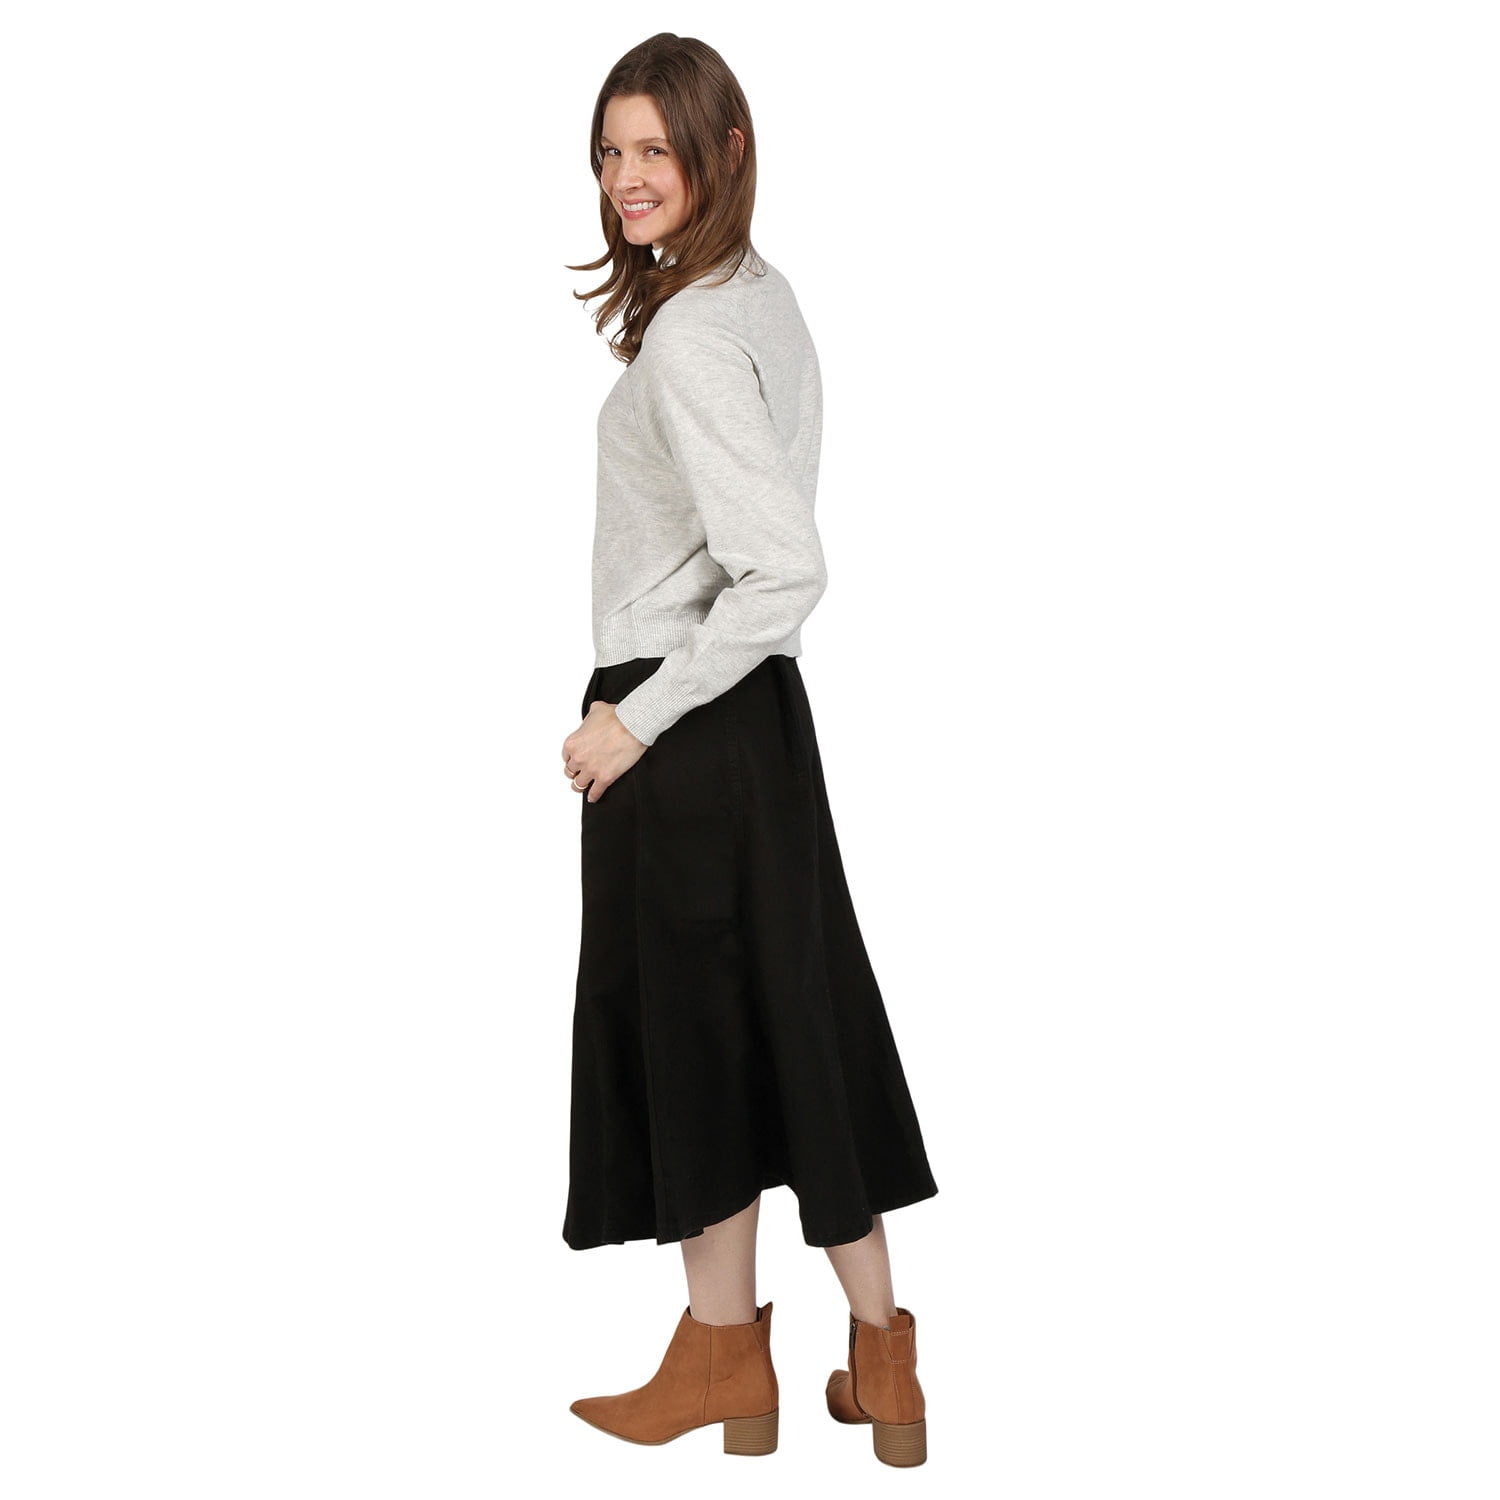 CATALOG CLASSICS Womens Long Denim Skirt Blue Jean Skirts for